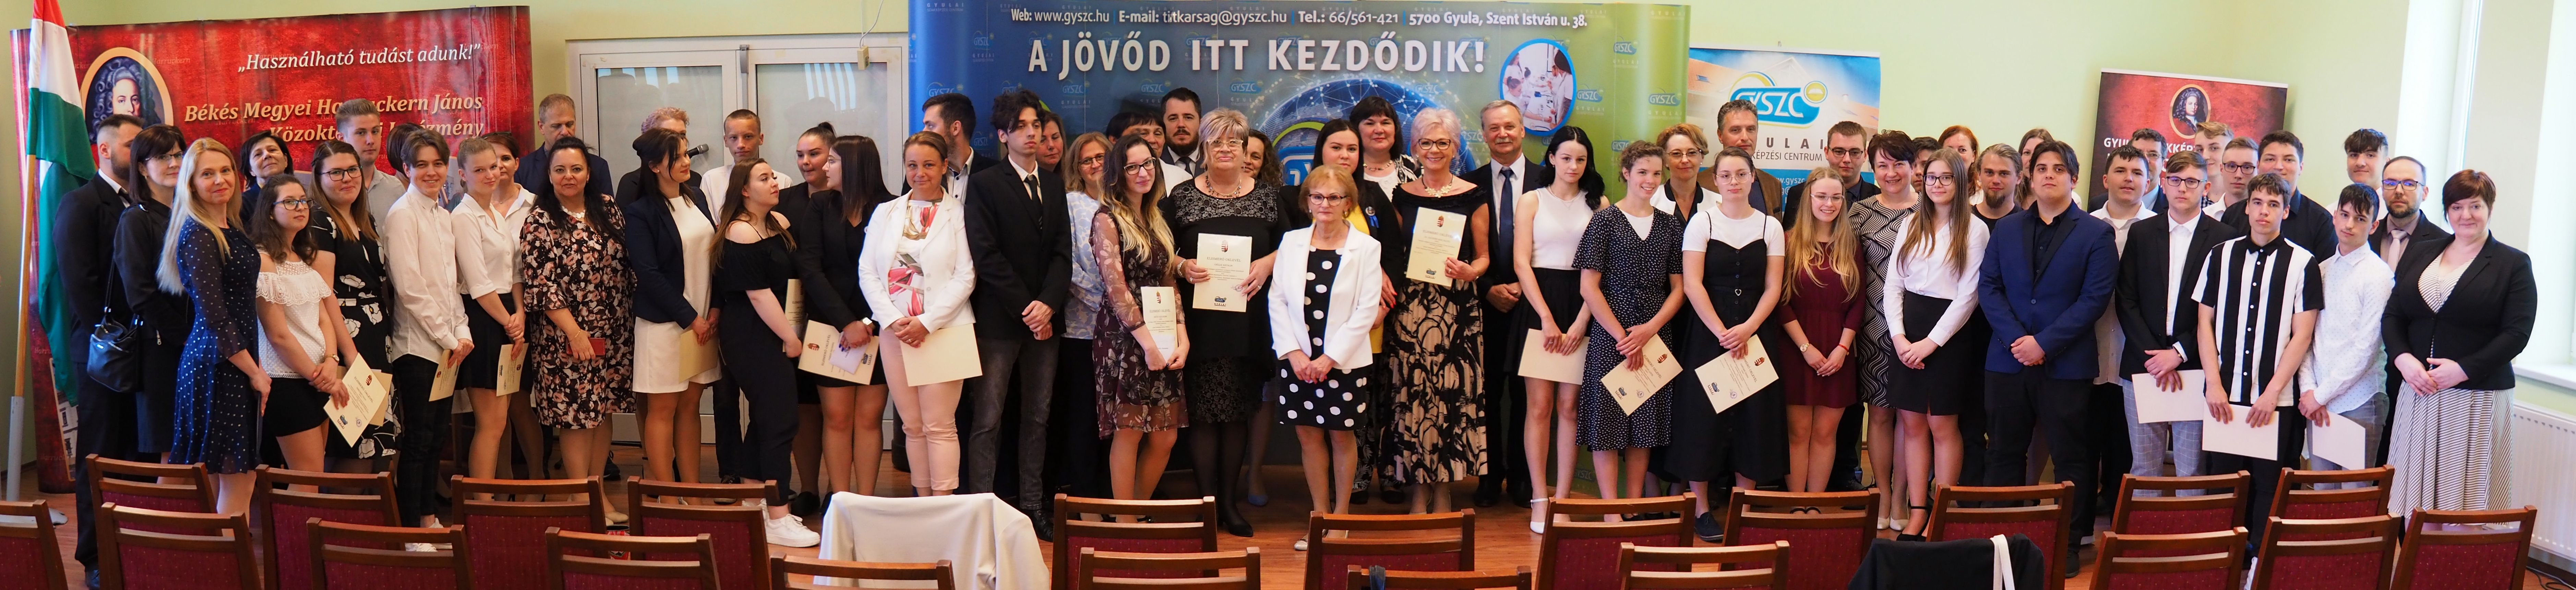 Kiemelkedő versenyeredmények elismerése a Gyulai Szakképzési Centrumban